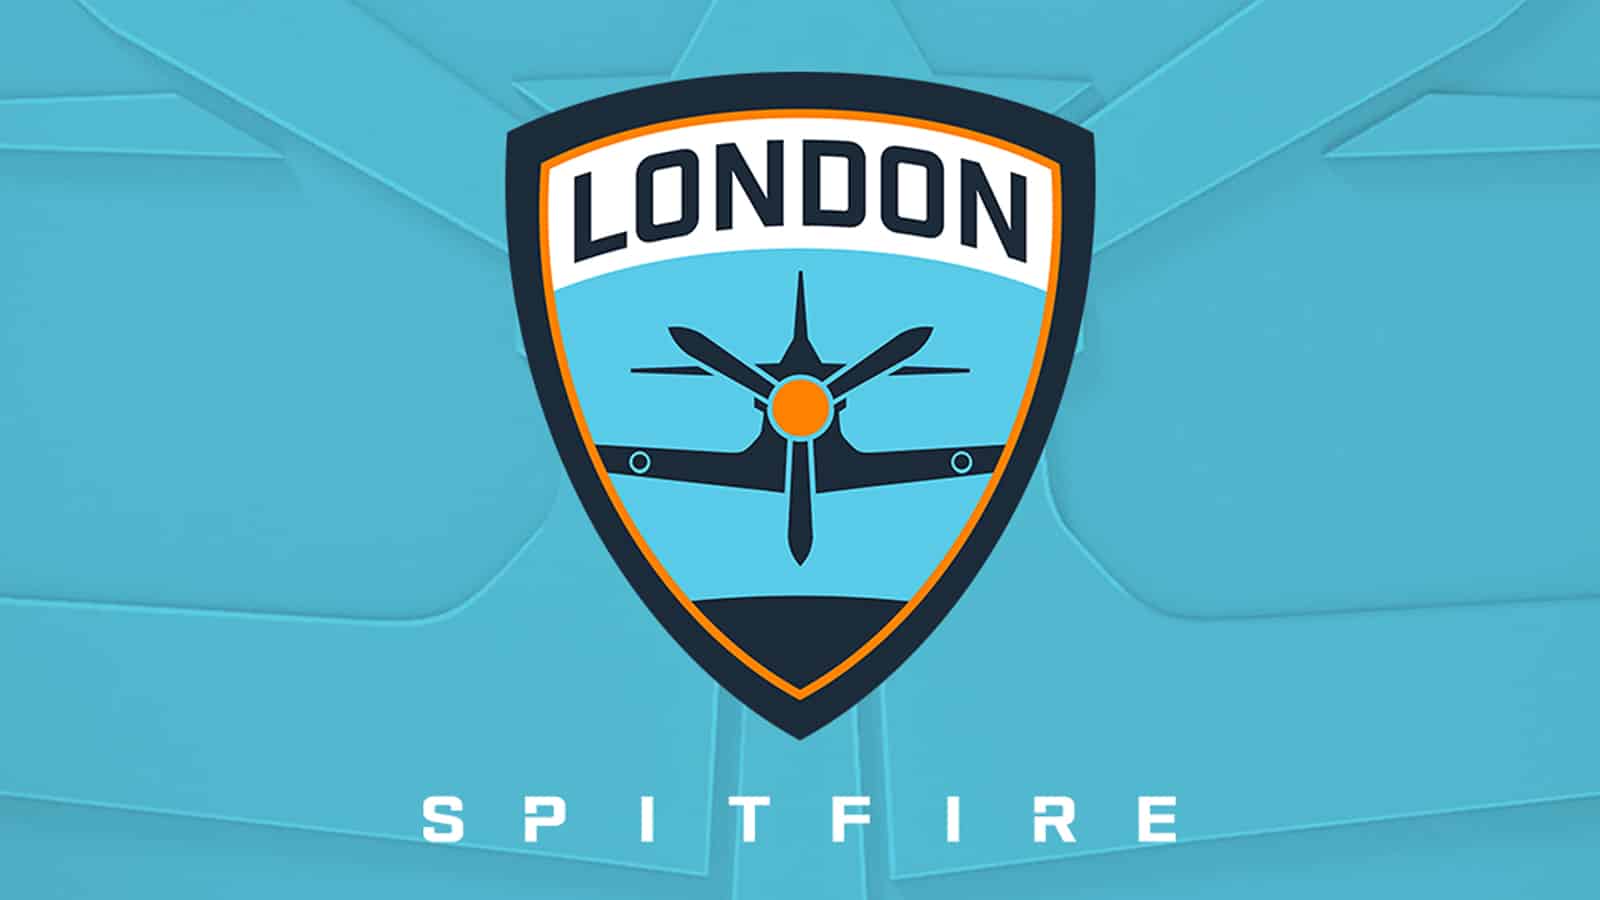 london spitfire provide